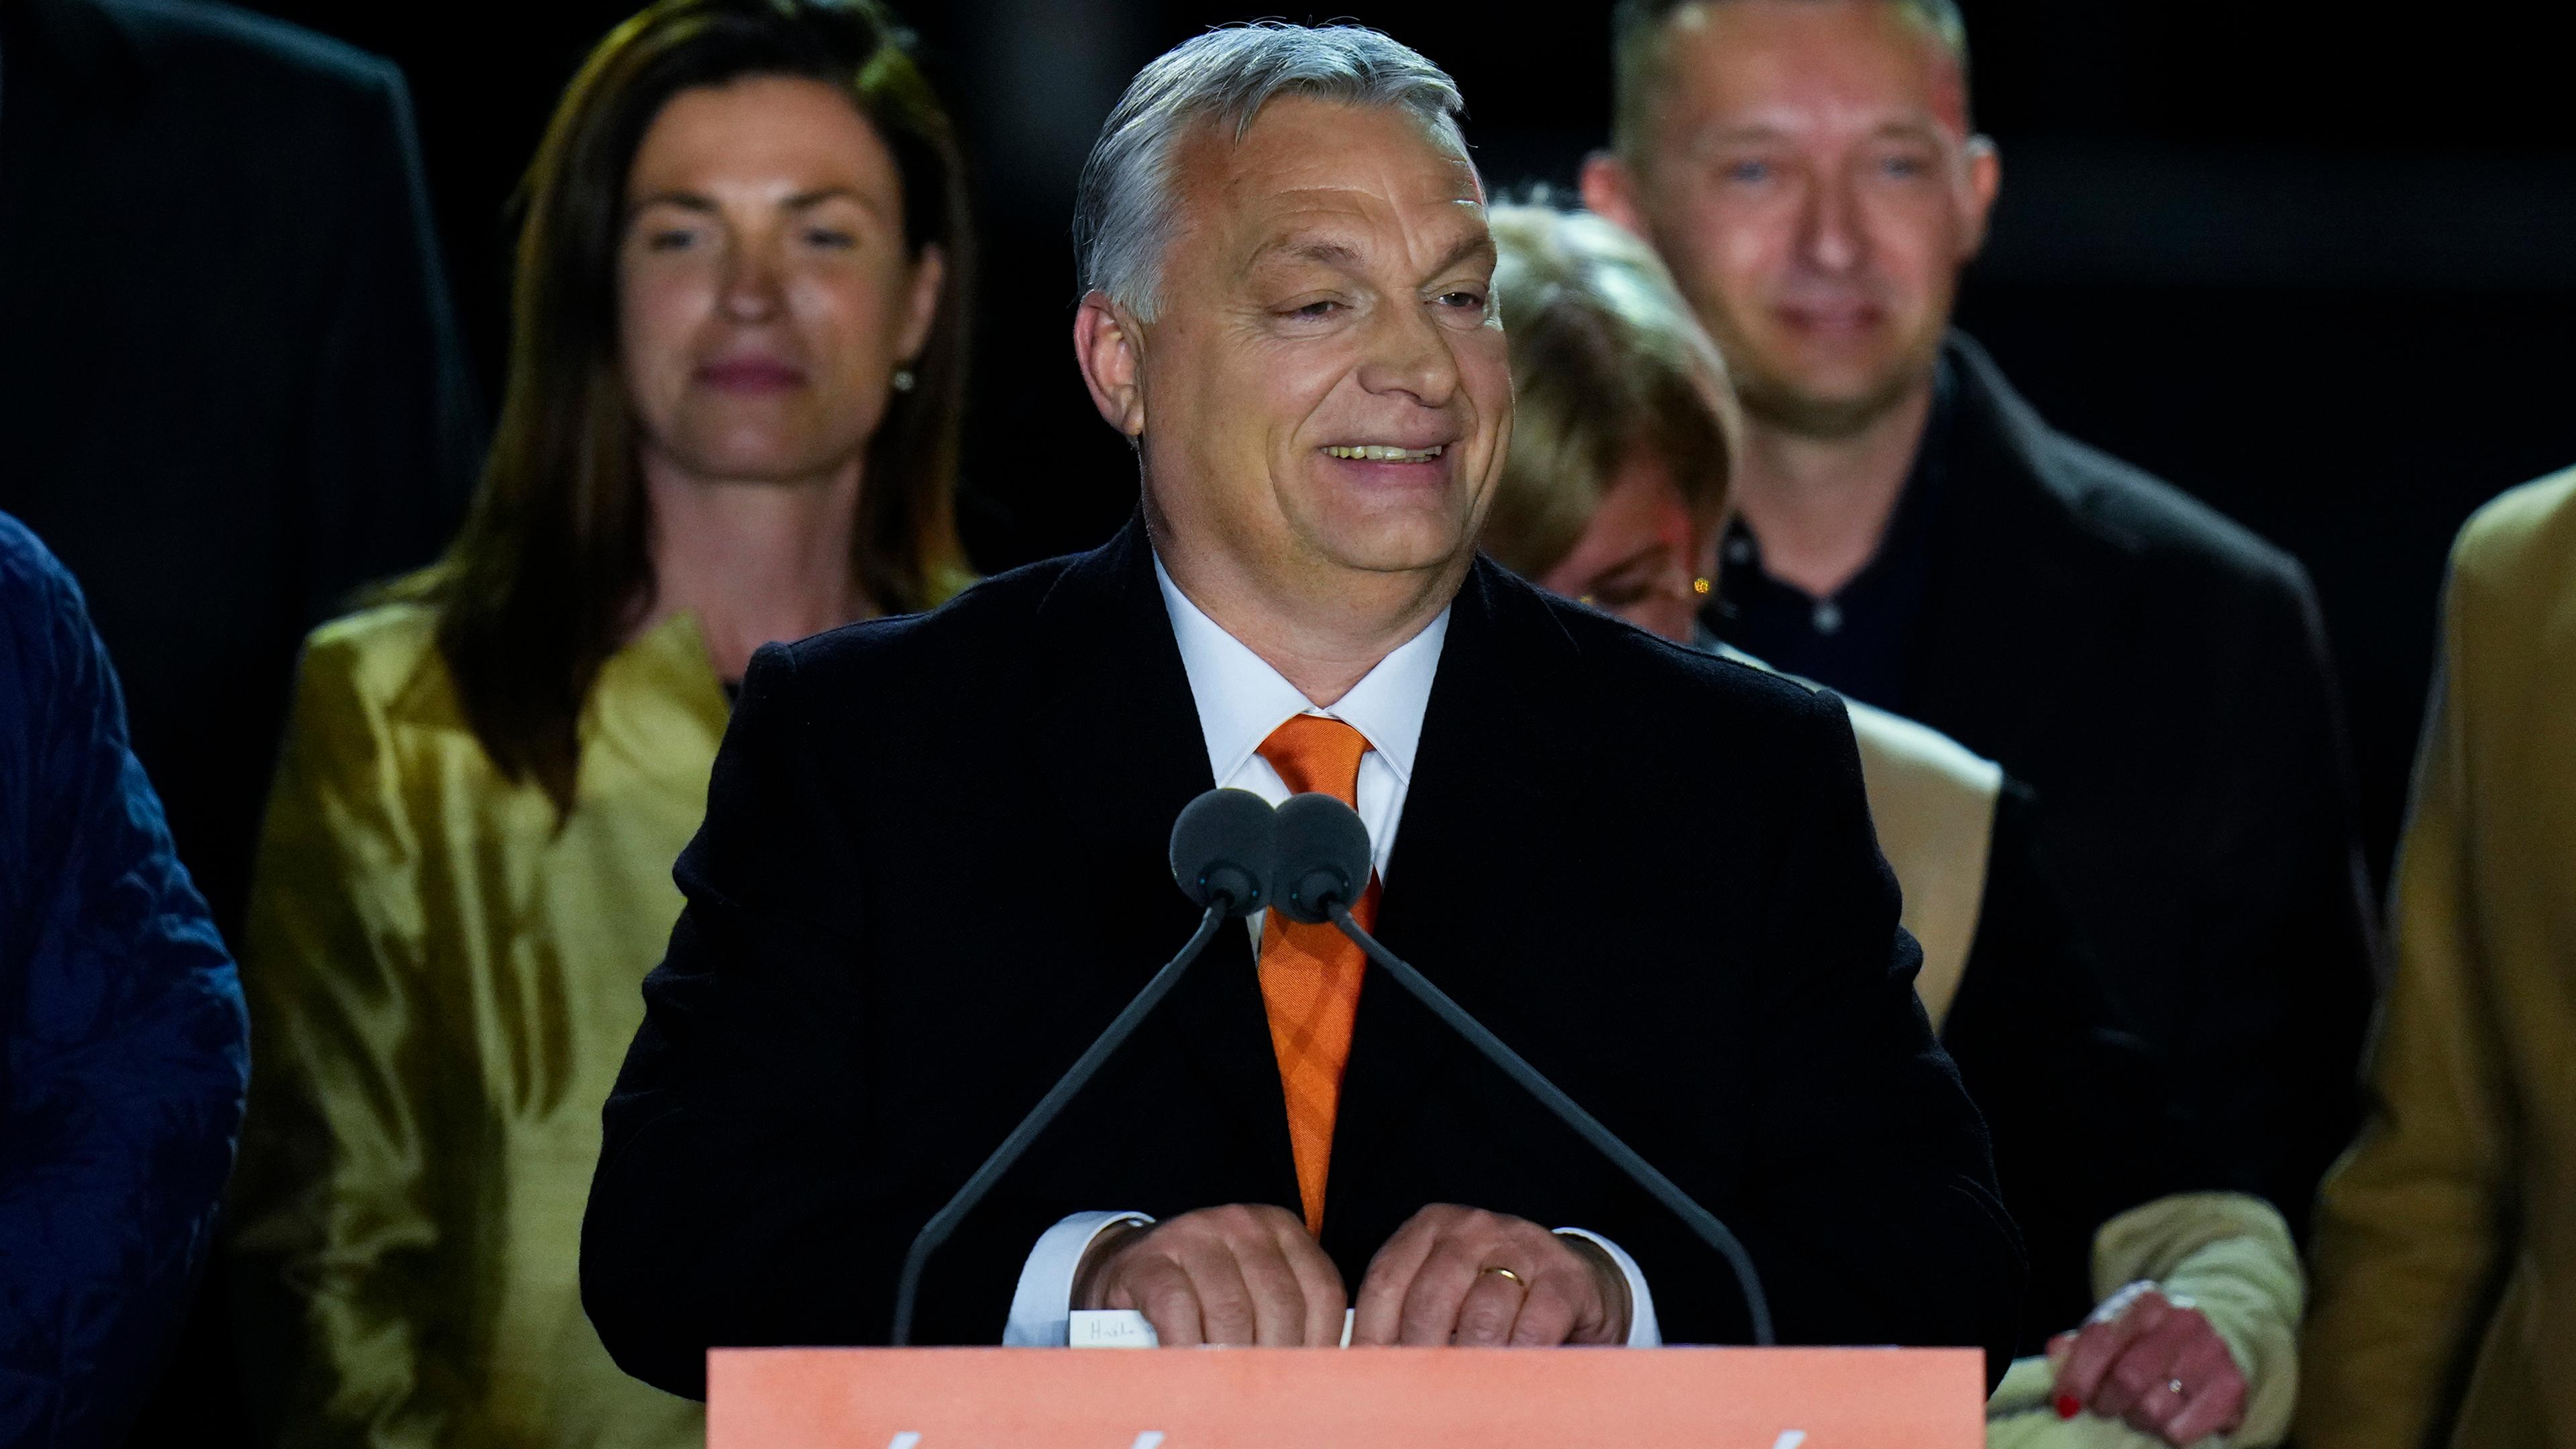 Ungarn, Budapest: Viktor Orban, Ministerpräsident von Ungarn, dankt jubelnden Anhängern während einer Wahlparty in Budapest, Ungarn.